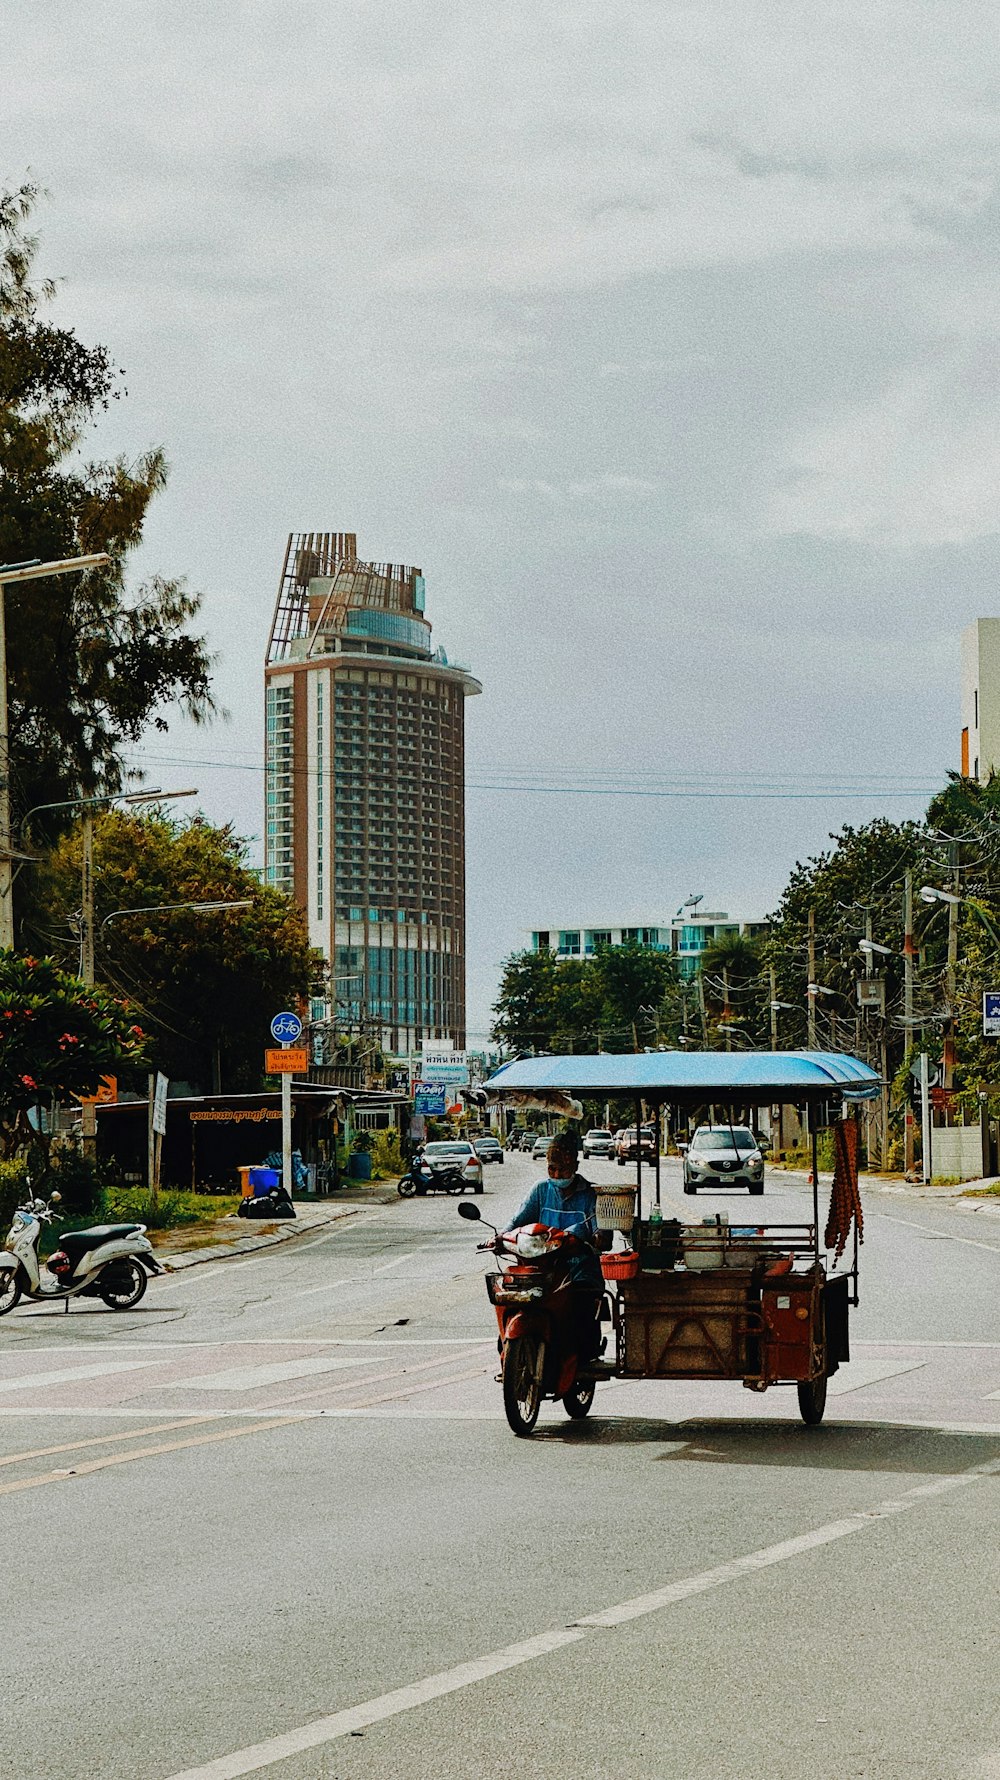 a man driving a cart on a city street